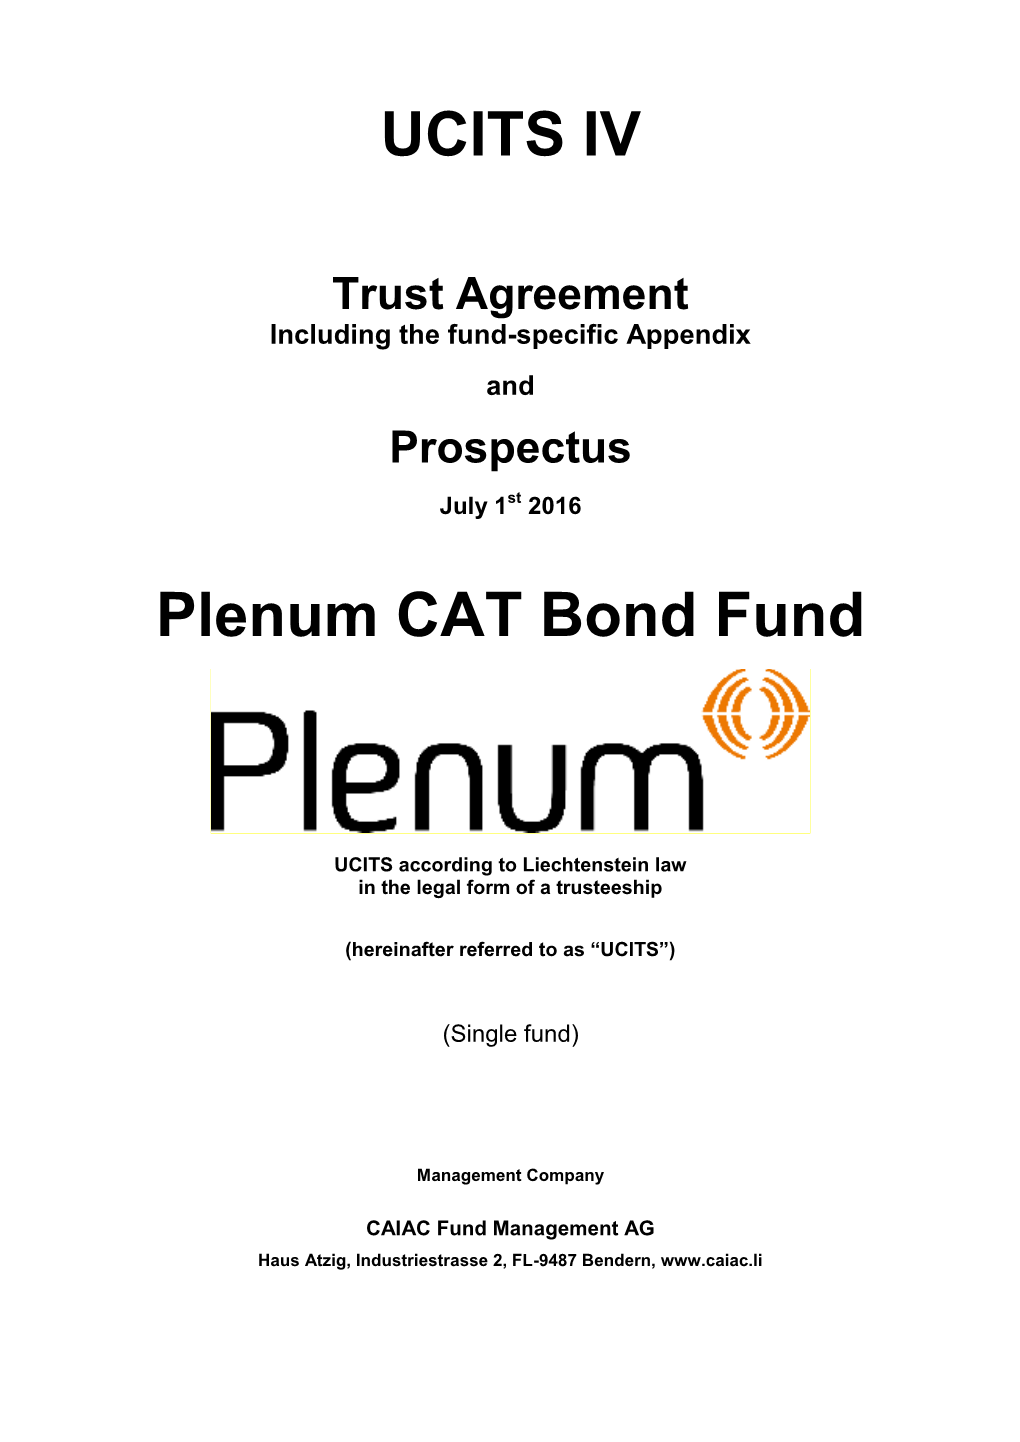 UCITS IV Plenum CAT Bond Fund